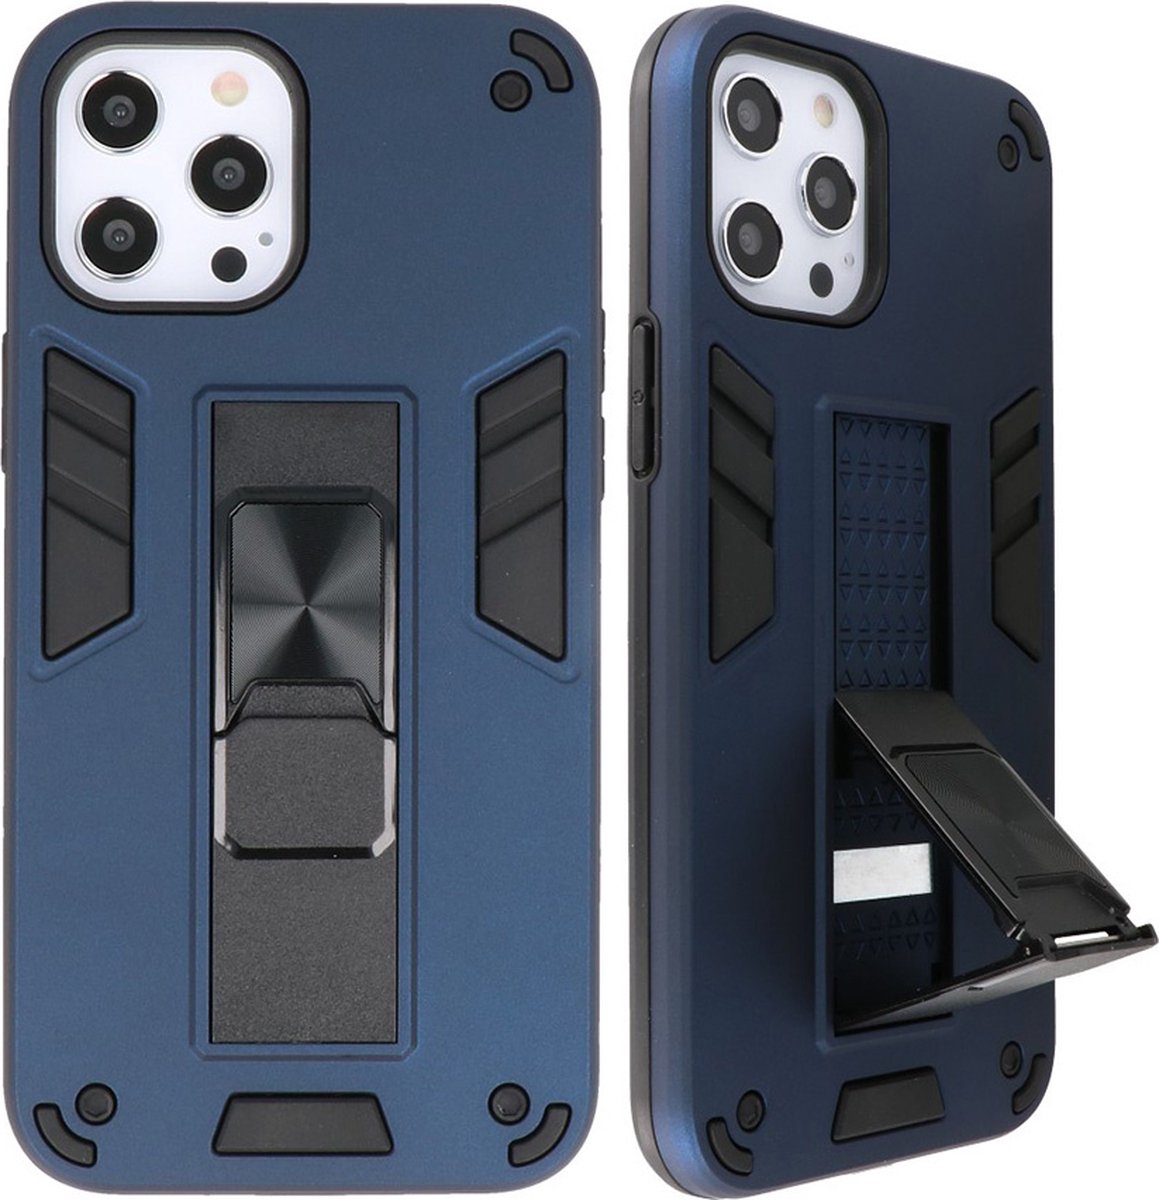 Hoesje Stand Hardcase Back Cover Color Navy geschikt voor Iphone 12 Pro Max